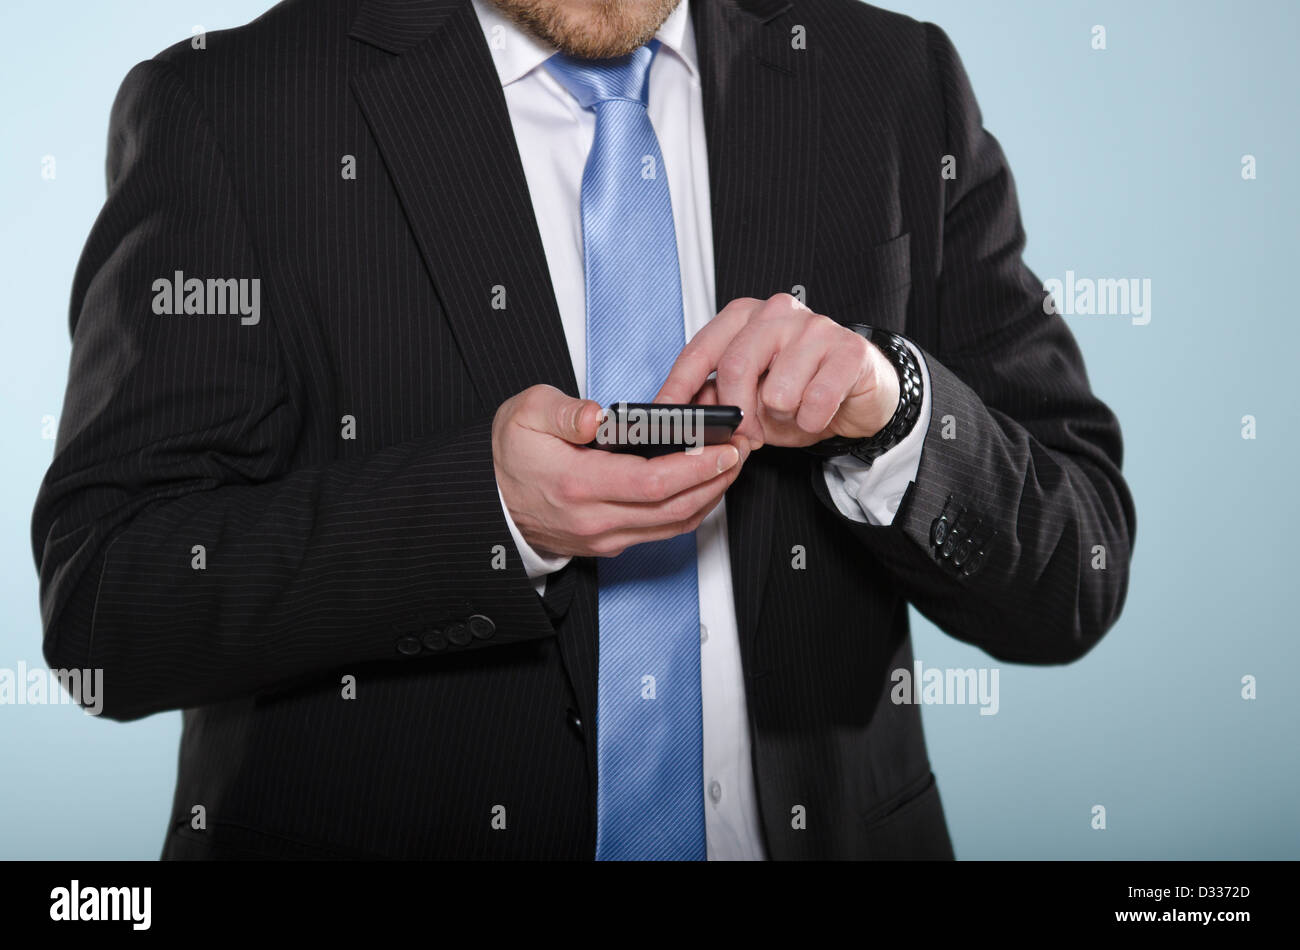 Businessman using smartphone. Section centrale de l'homme adaptée à la légère à l'aide d'un téléphone à écran tactile avec son doigt. Banque D'Images